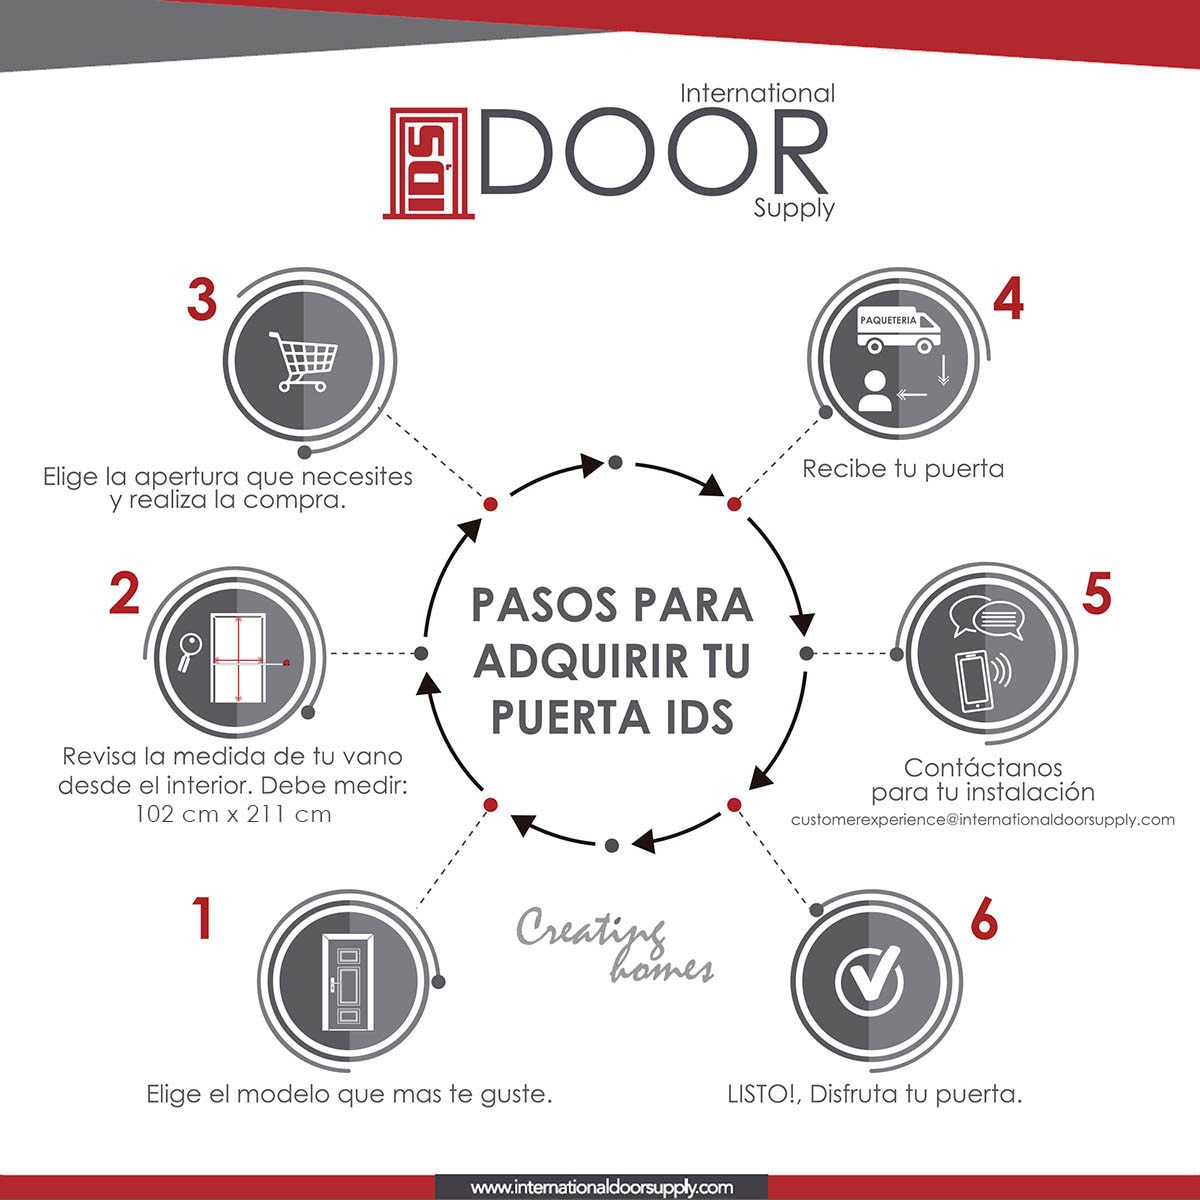 International Door Supply, Puerta de Alta Seguridad Condesa Izquierda